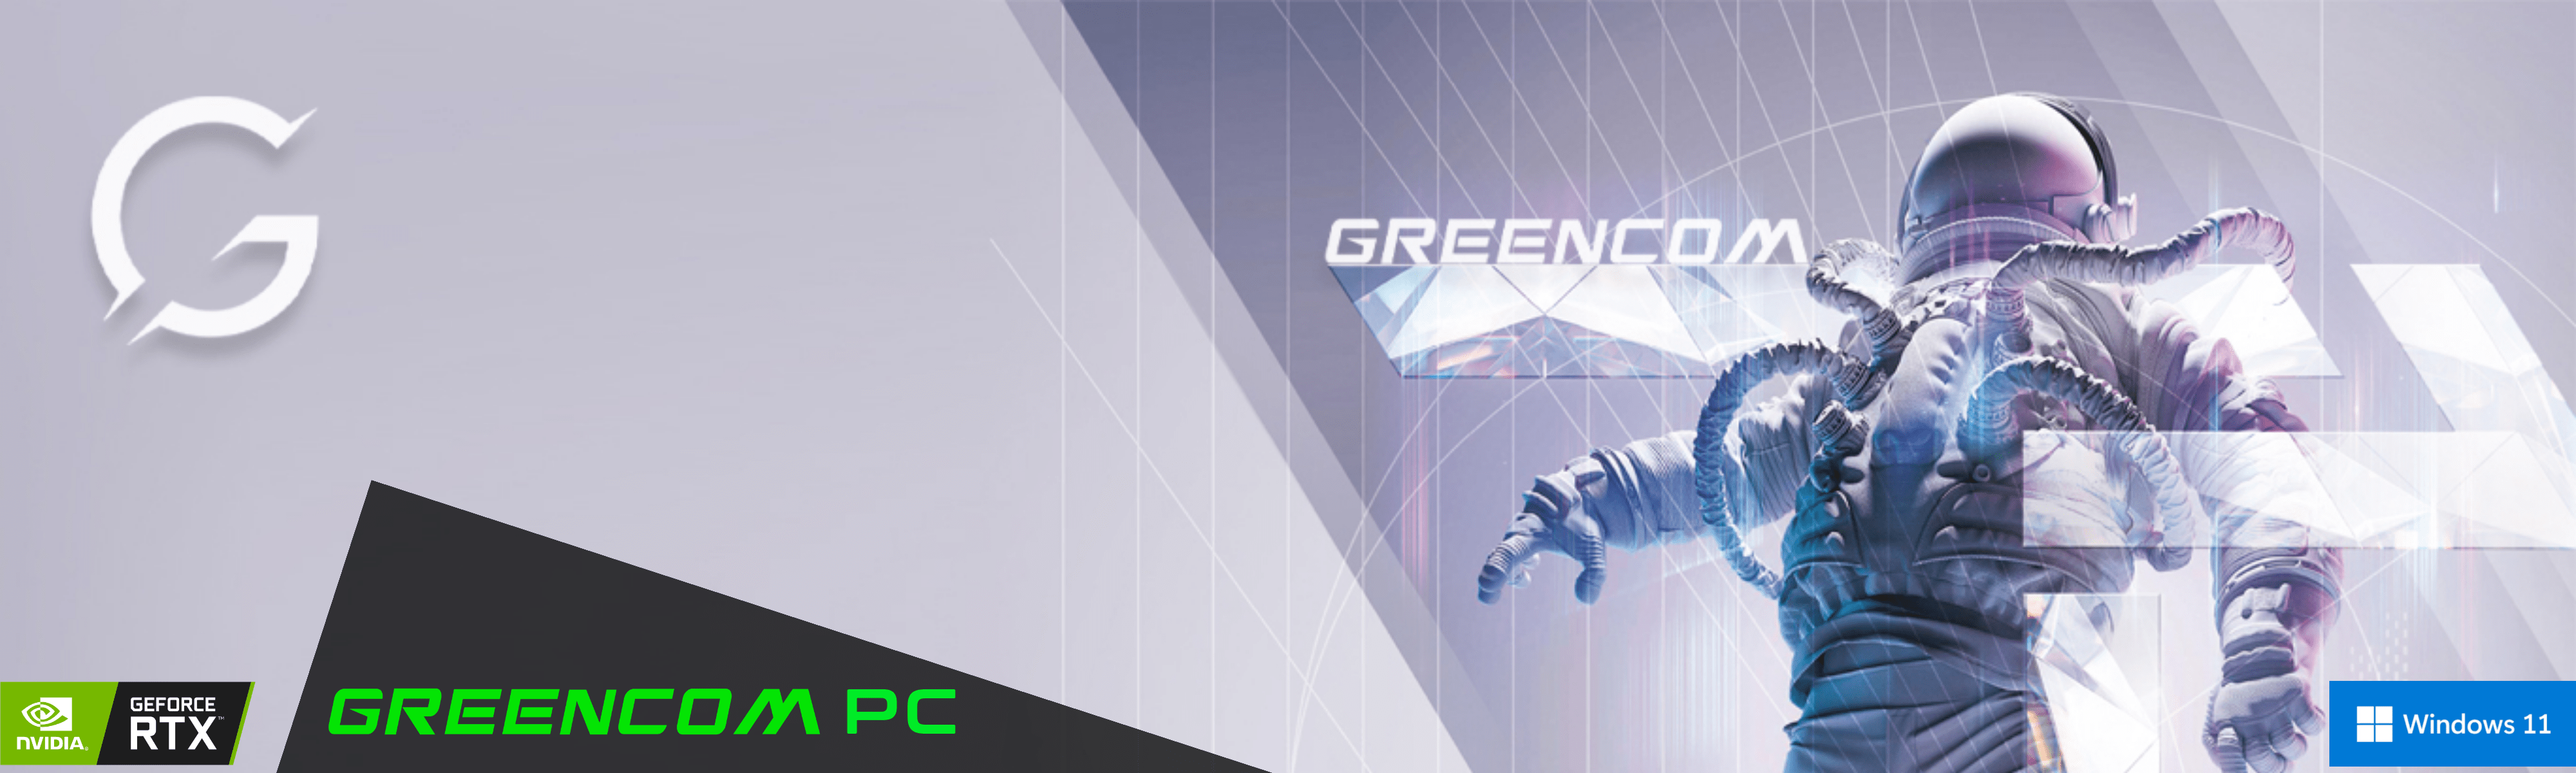 Greencom PC